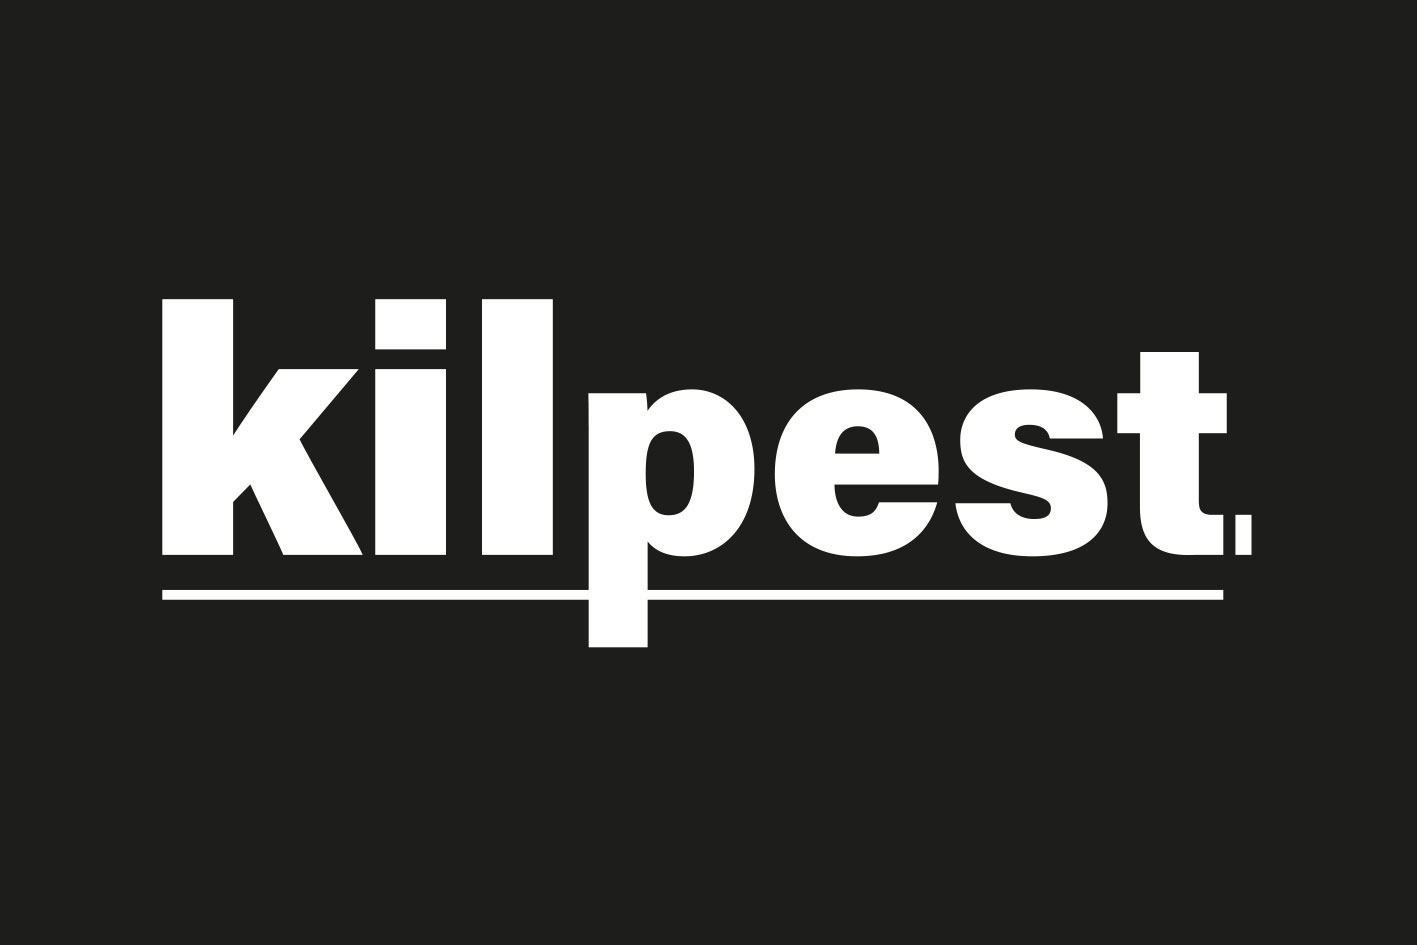 Kilpest, expert antinuisibles. Logo typographique en blanc sur fond noir